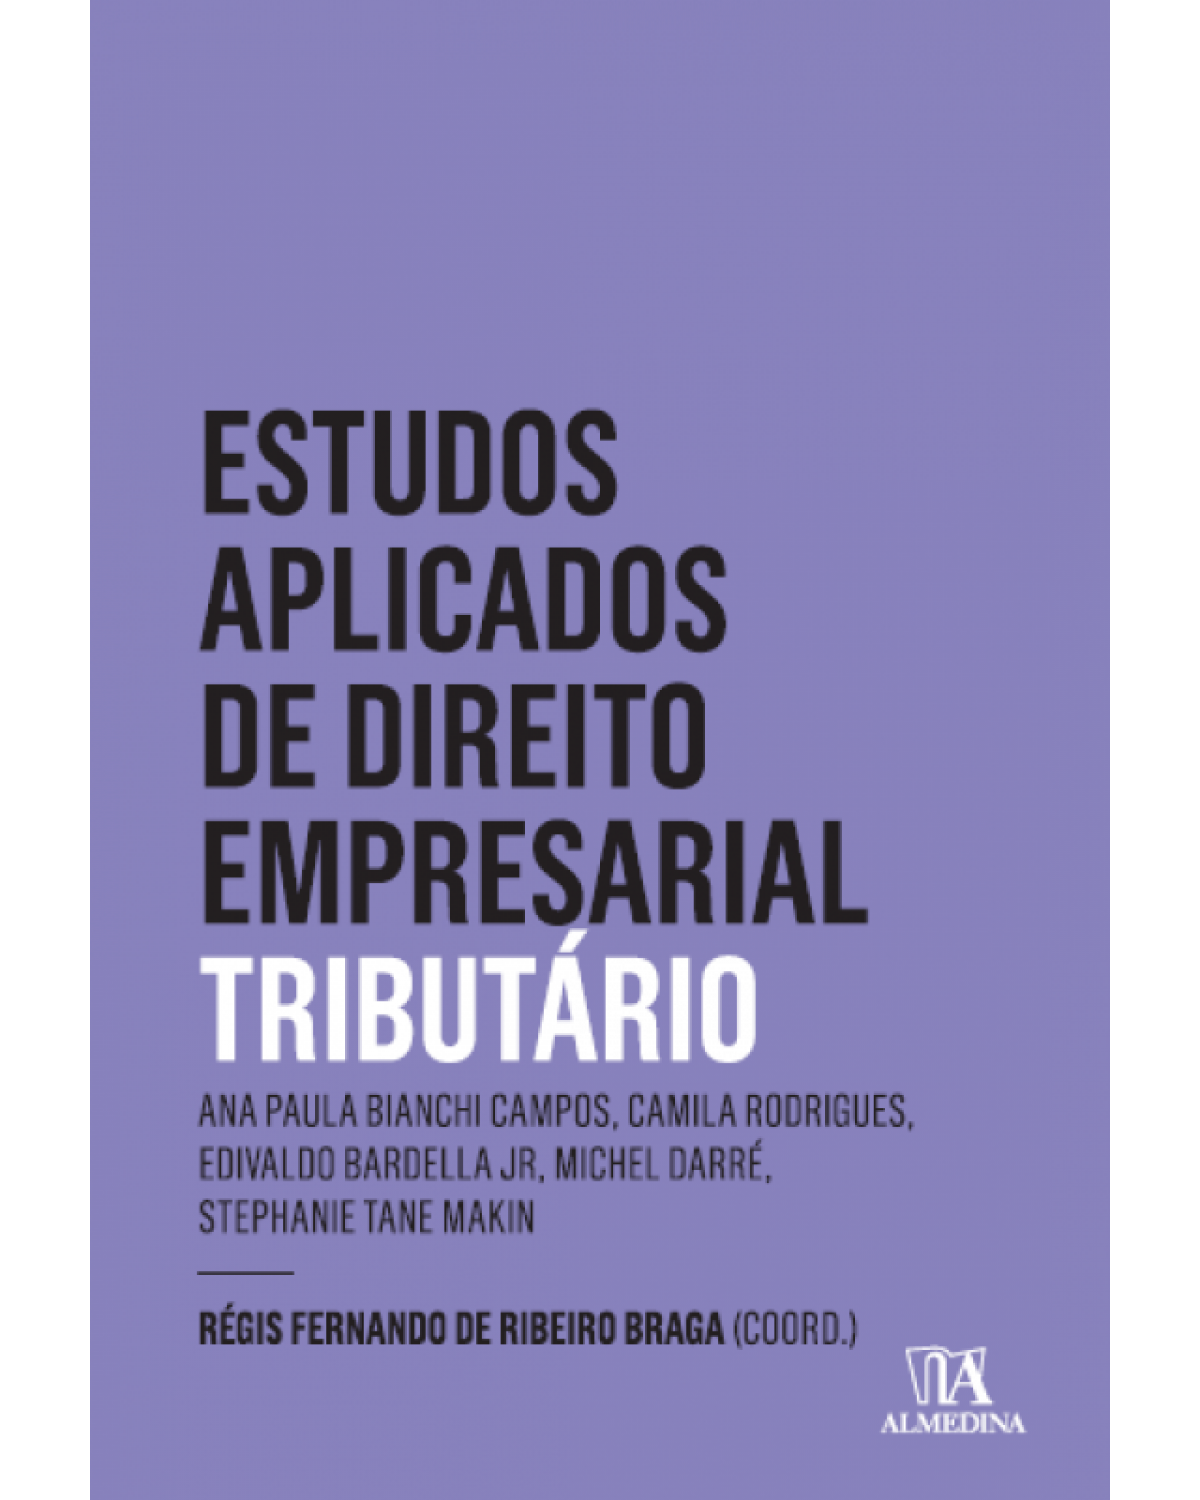 Estudos aplicados de direto empresarial - Tributário - 1ª Edição | 2016